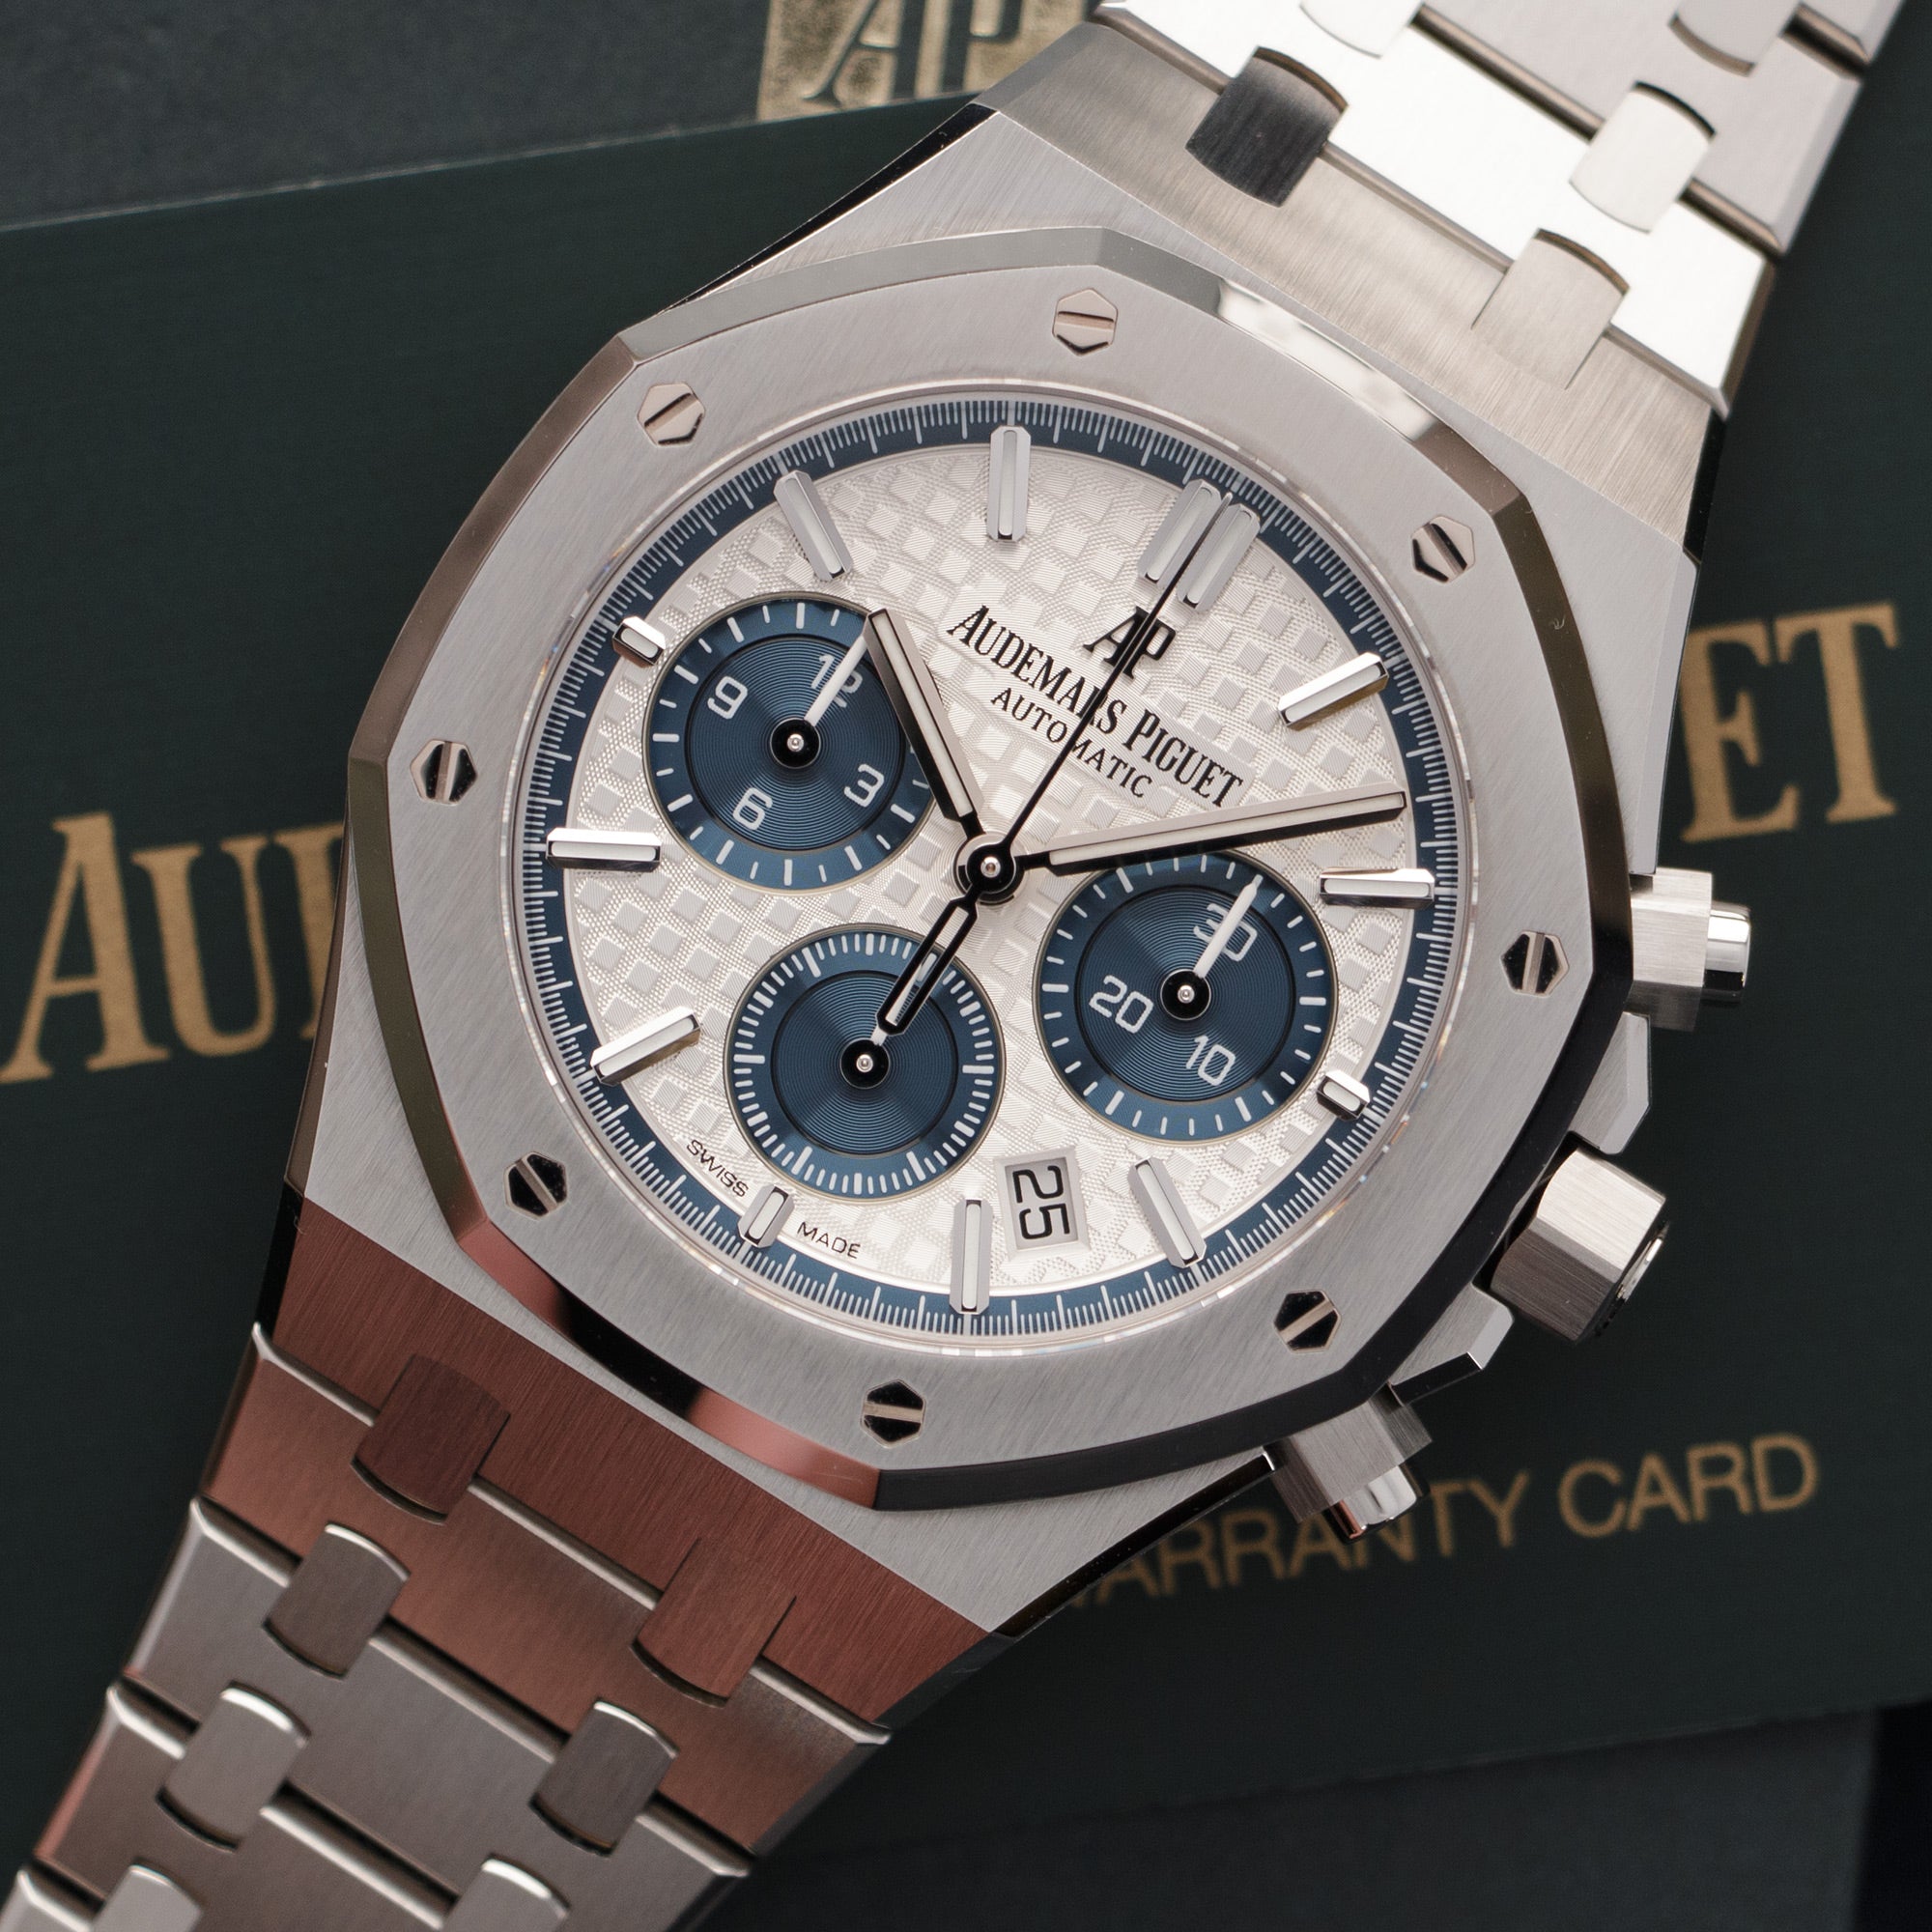 Audemars Piguet - Audemars Piguet Royal Oak Chronograph Watch Ref. 26315 - The Keystone Watches